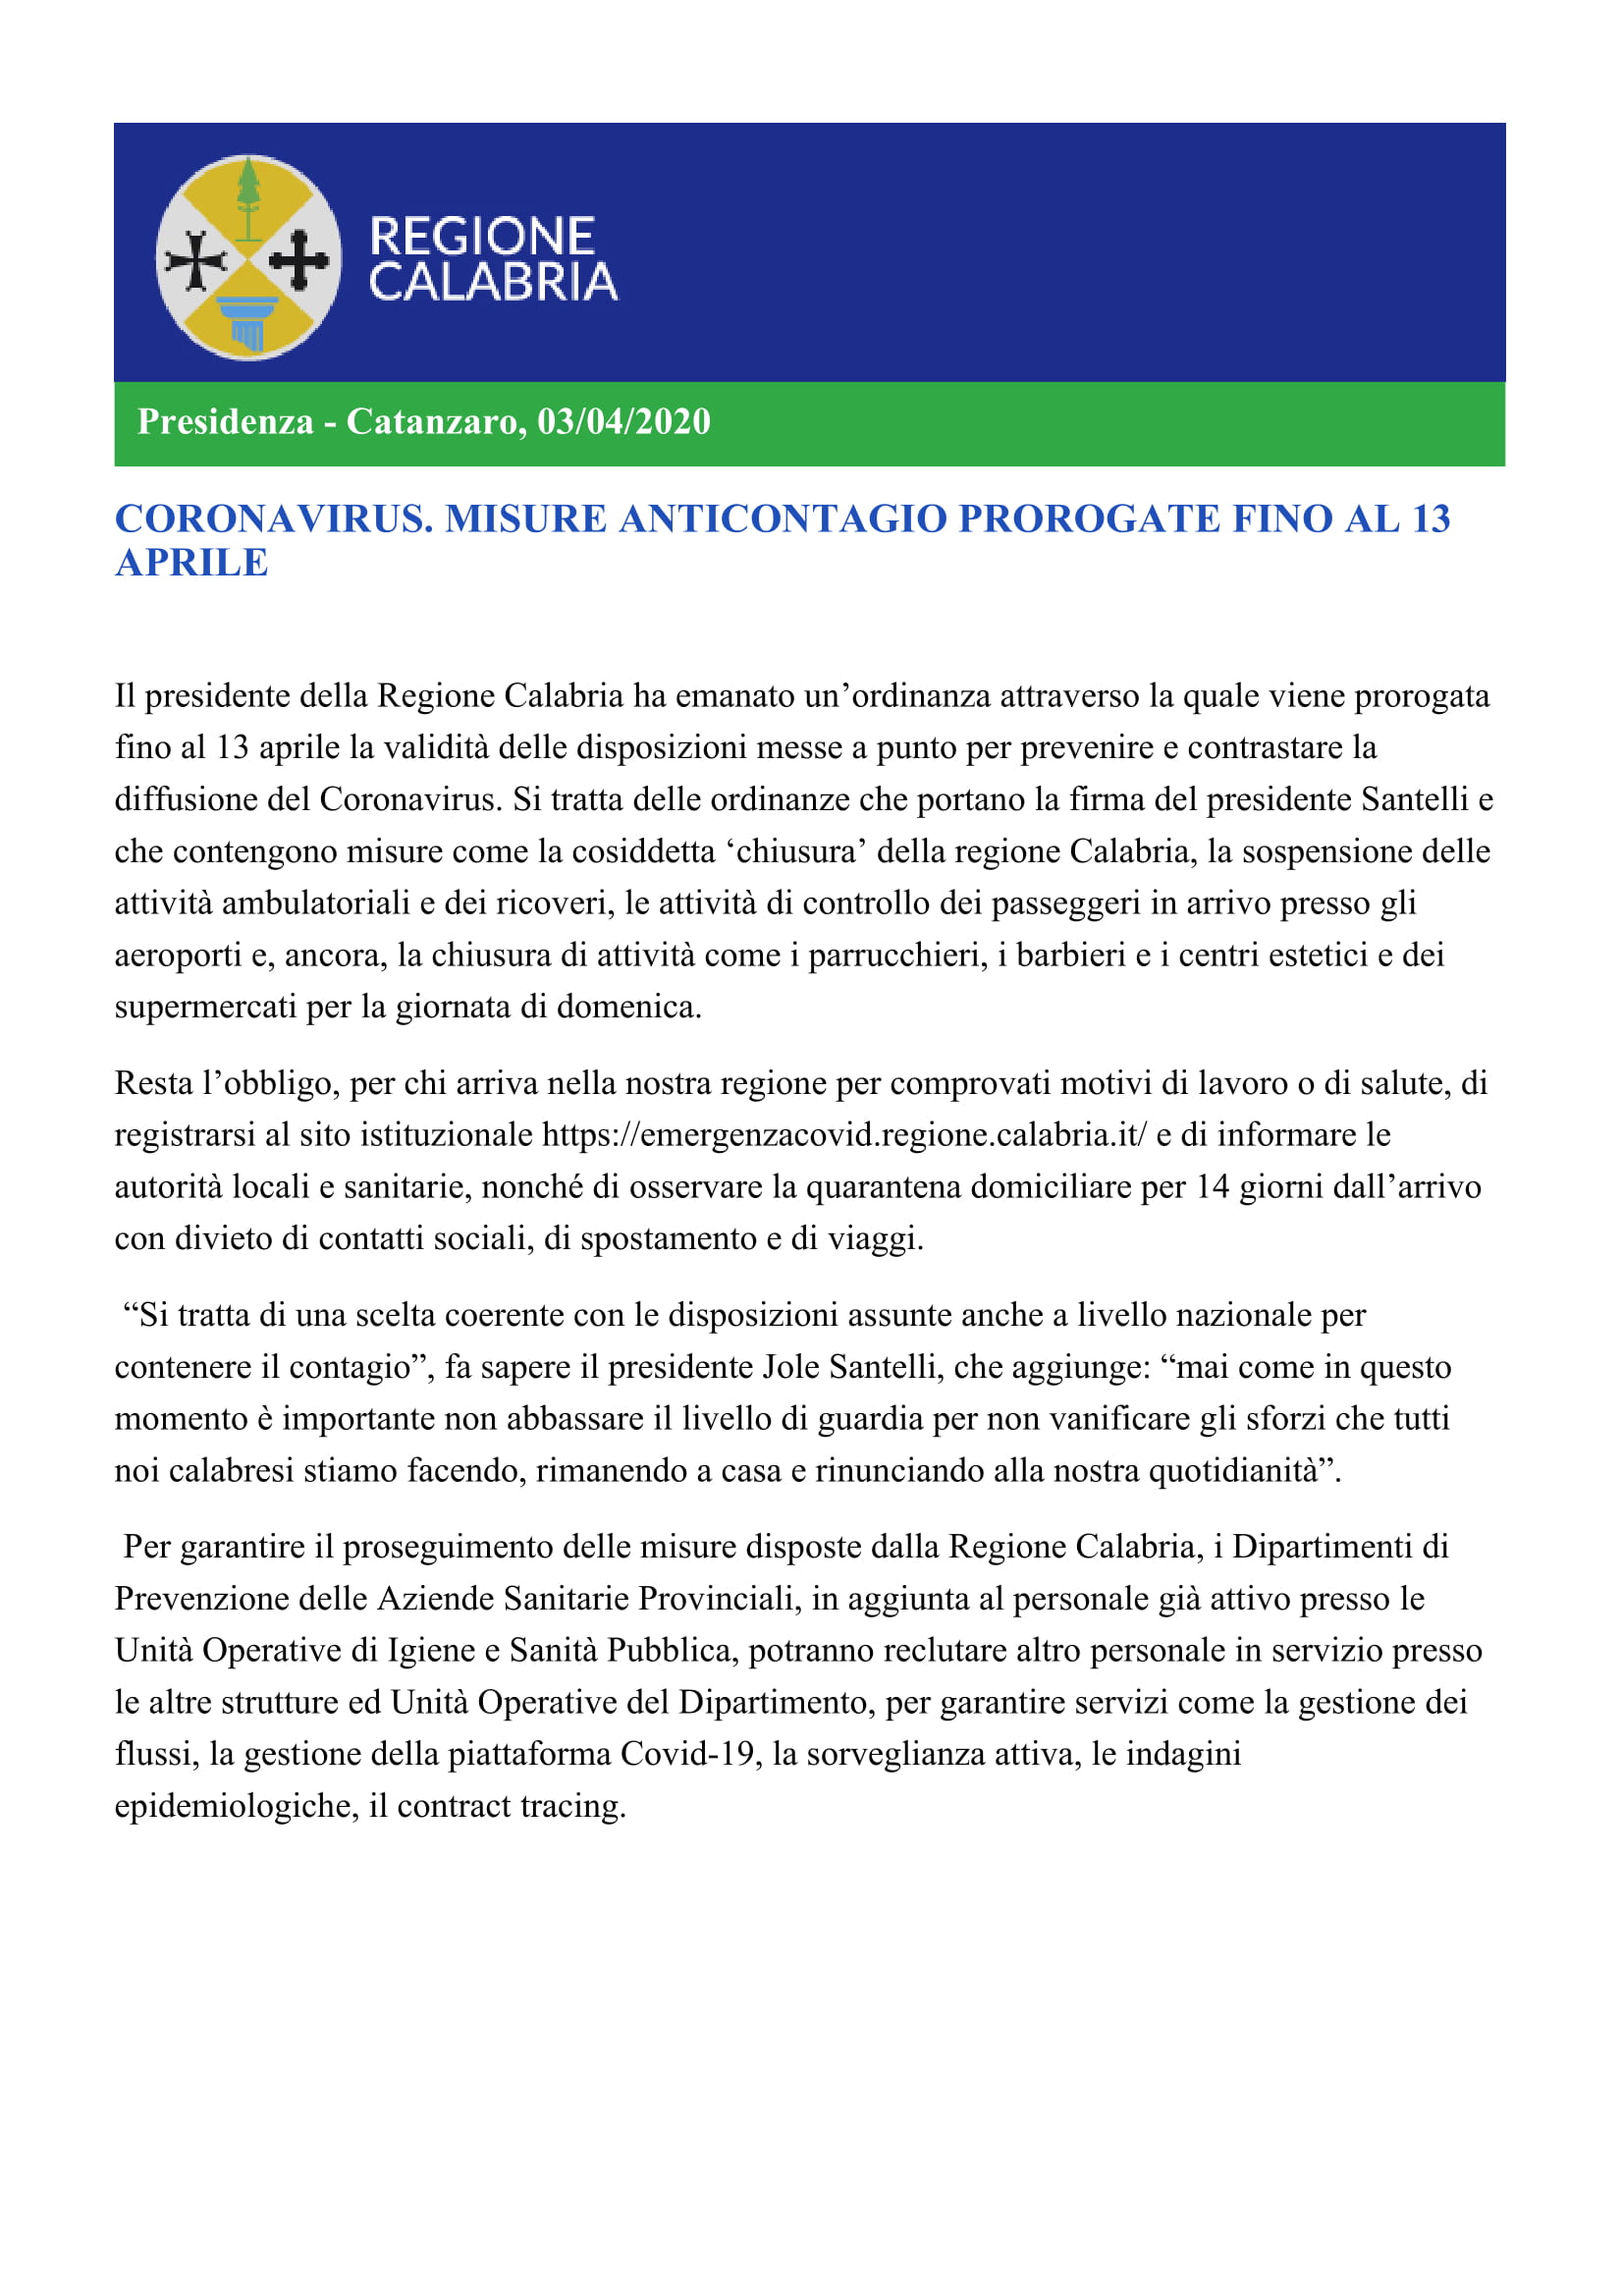 CORONAVIRUS. Comunicato della Presidenza della Regione Calabria. Misure anticontagio prorogate fino al 13 aprile 2020